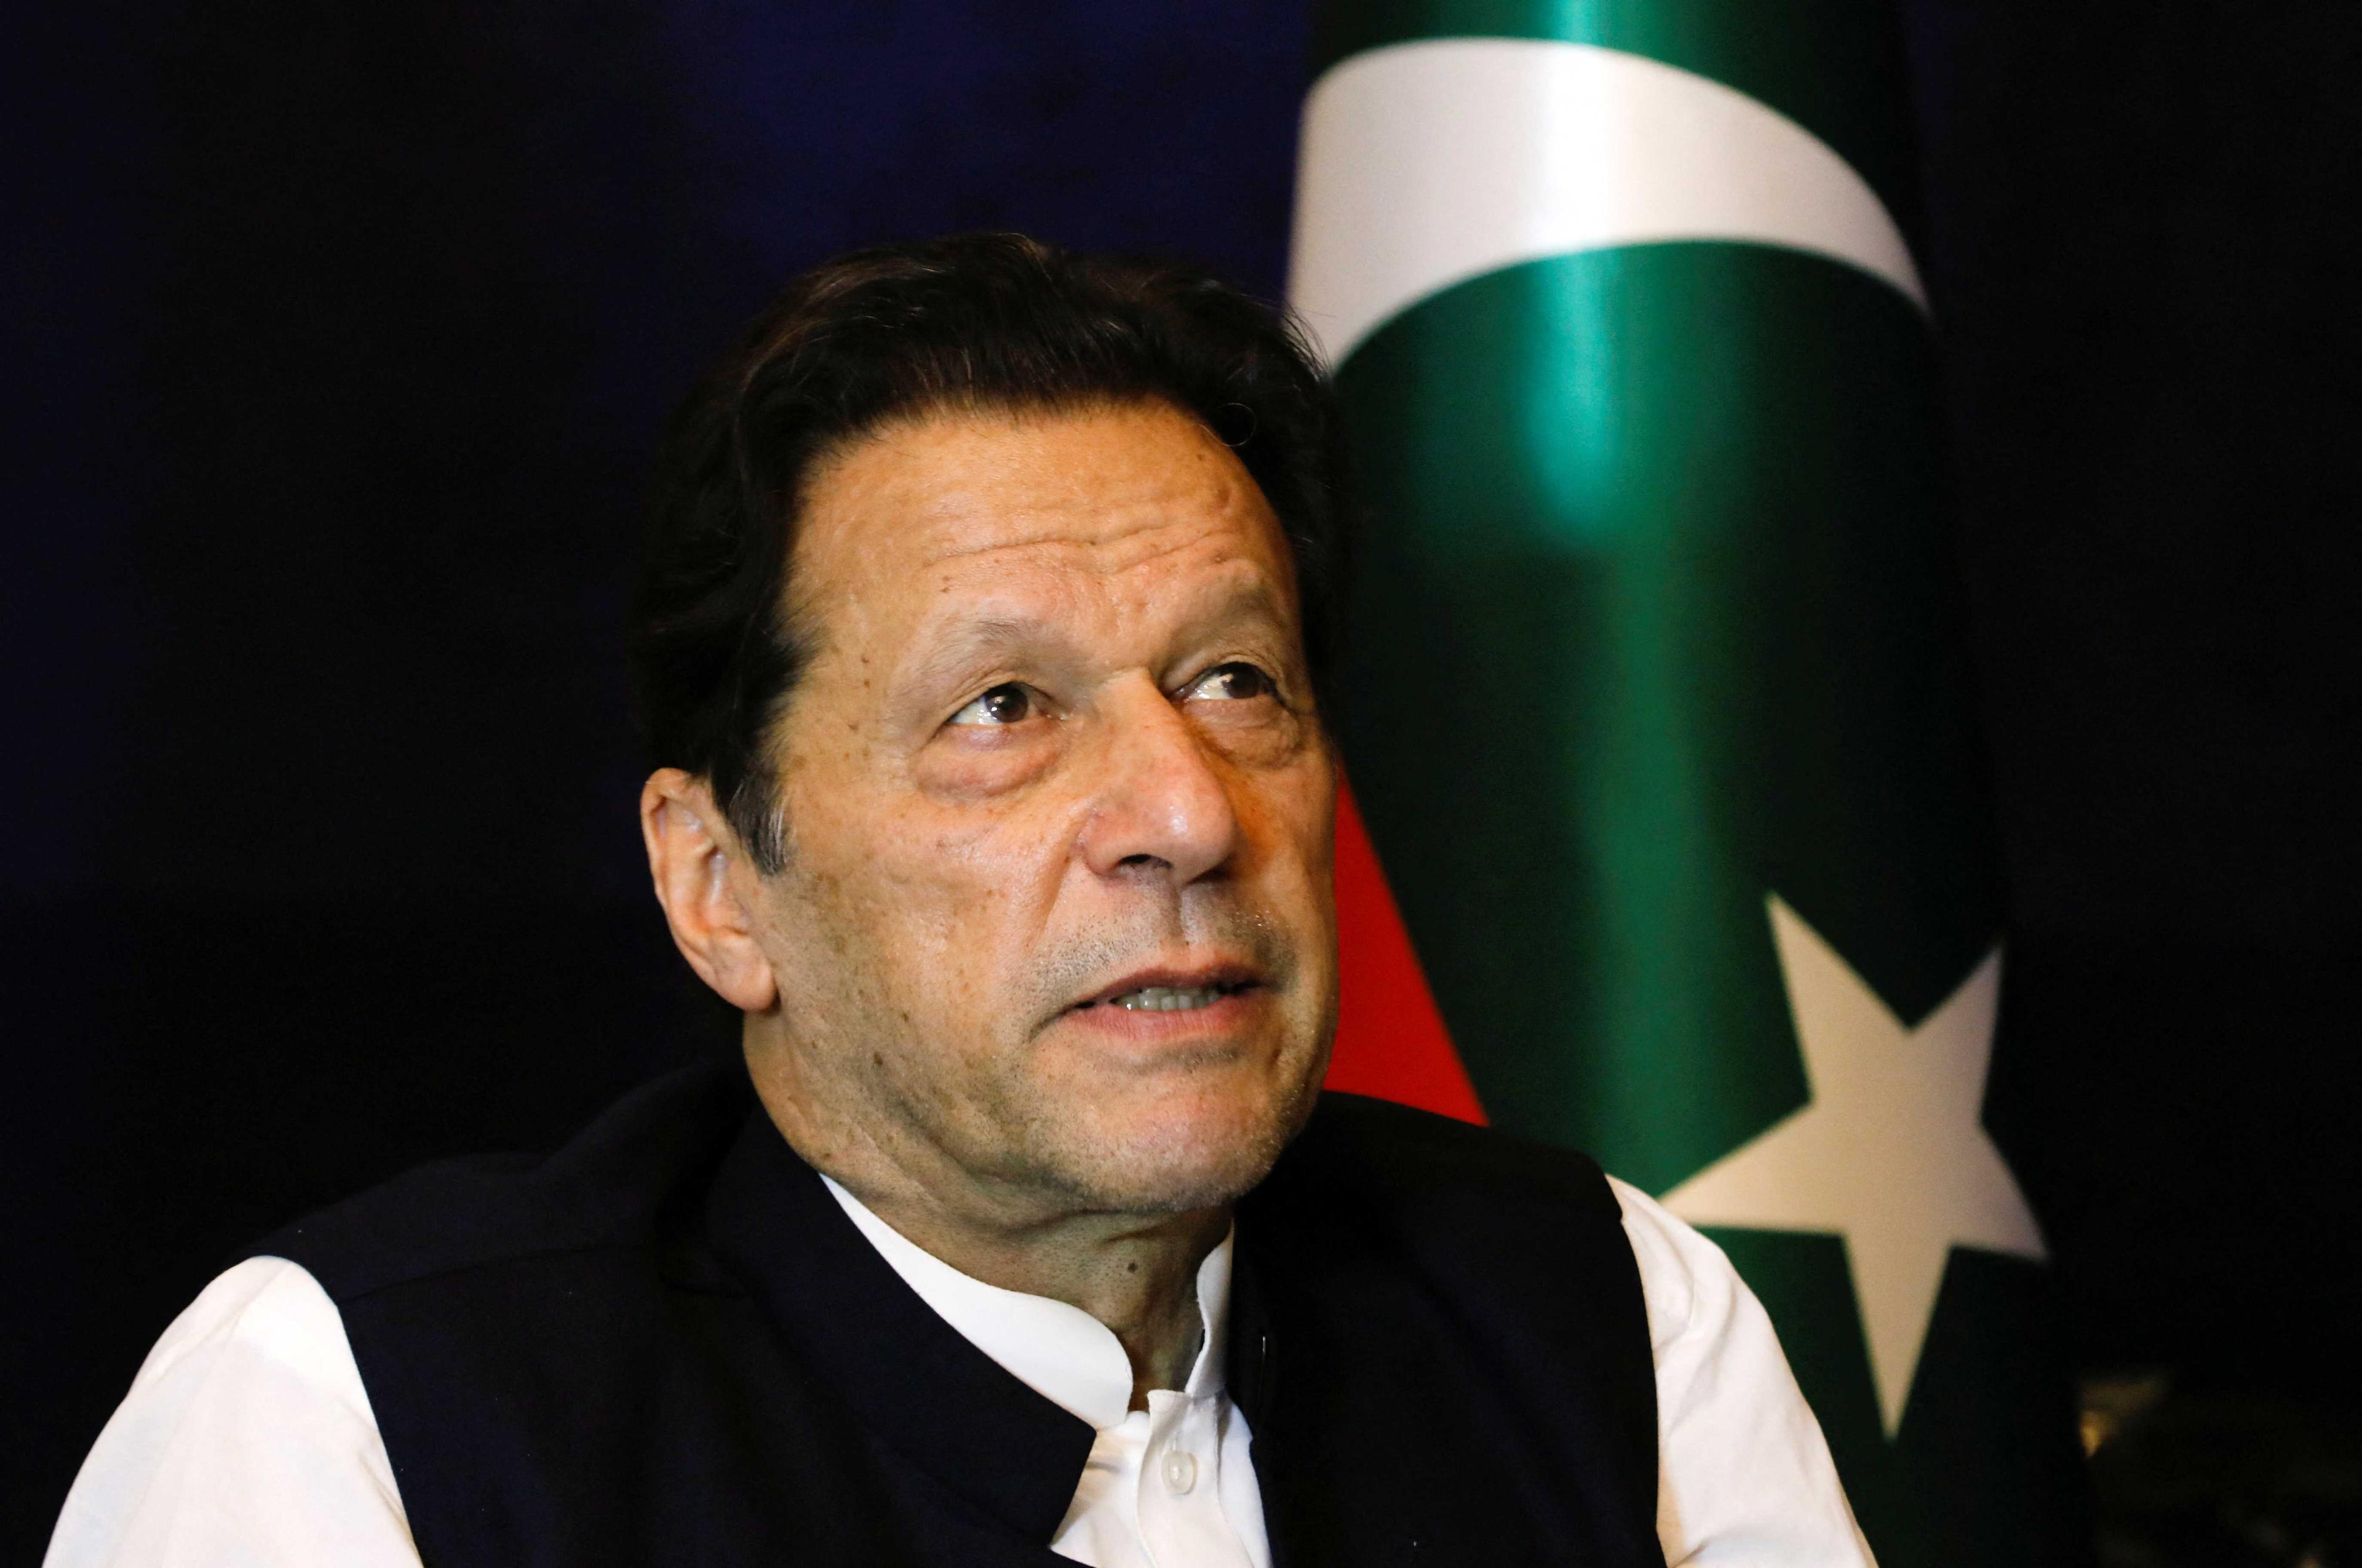 Bekas perdana menteri Pakistan Imran Khan berhenti seketika ketika bercakap dengan Reuters semasa wawancara, di Lahore, Pakistan 17 Mac. Gambar: Reuters